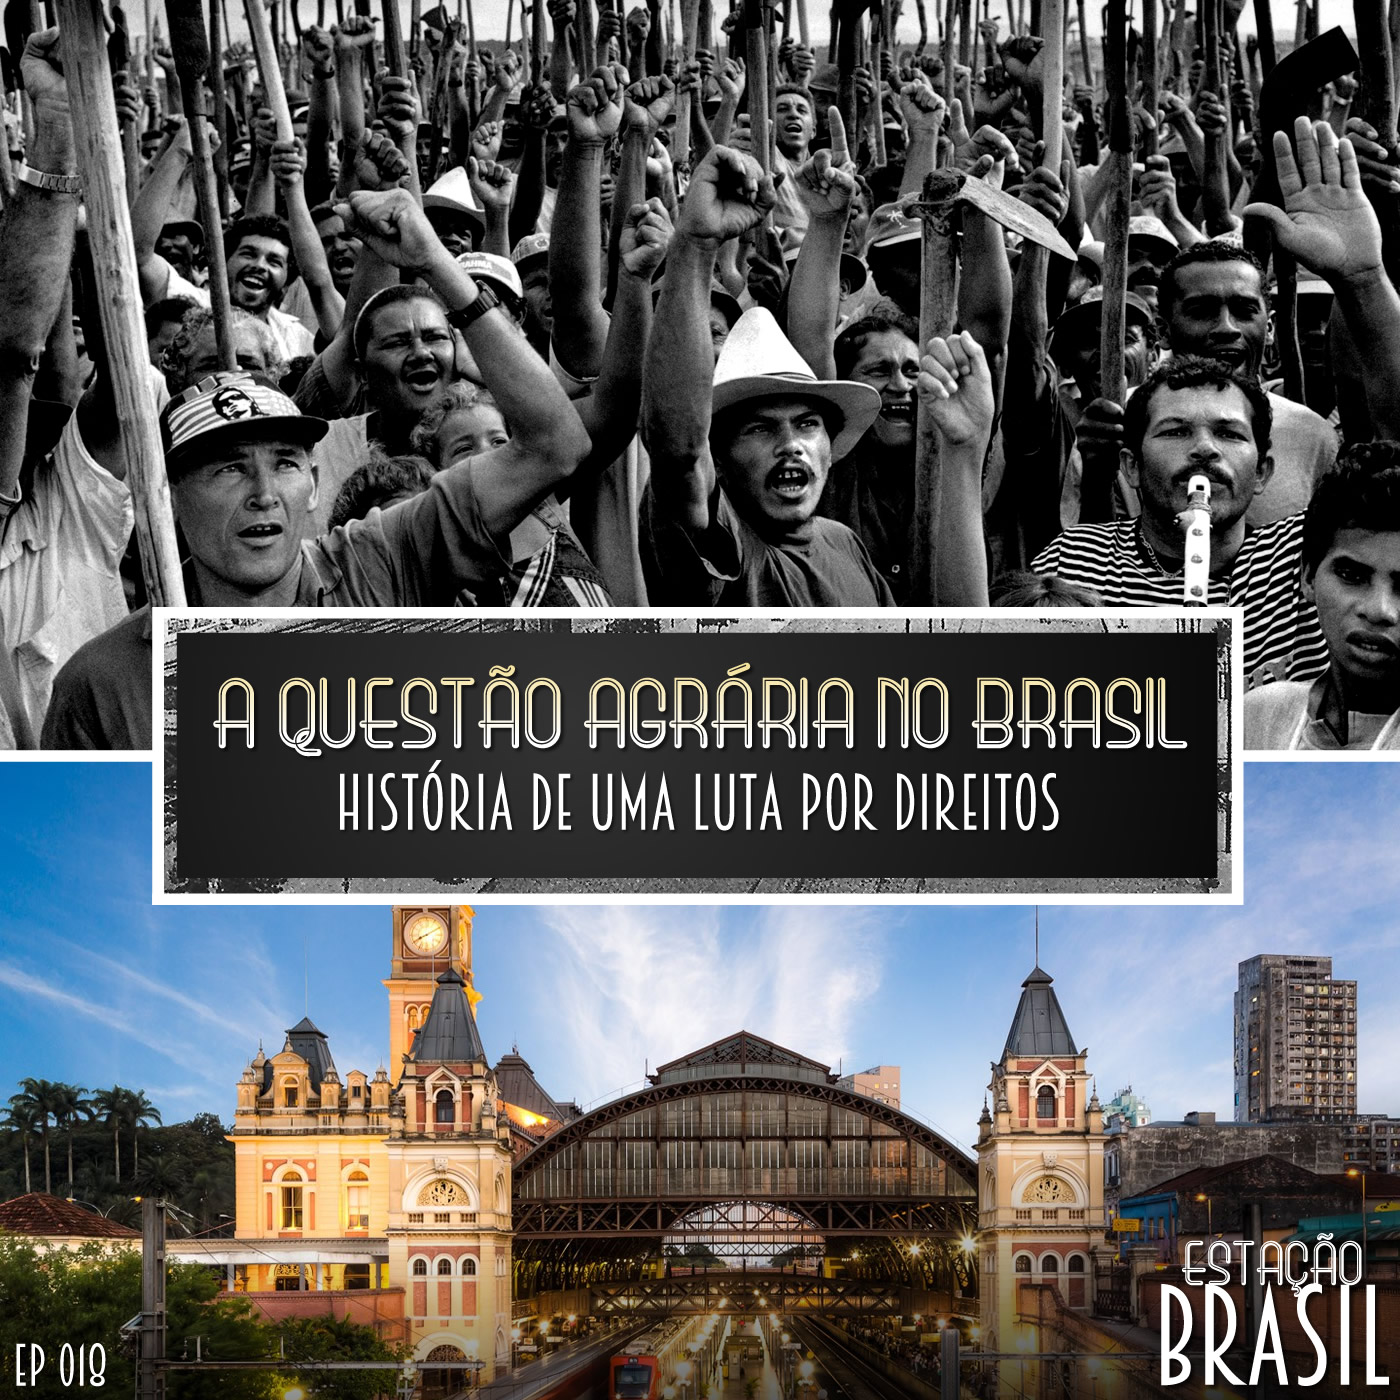 A questão agrária no Brasil: história de uma luta por direitos